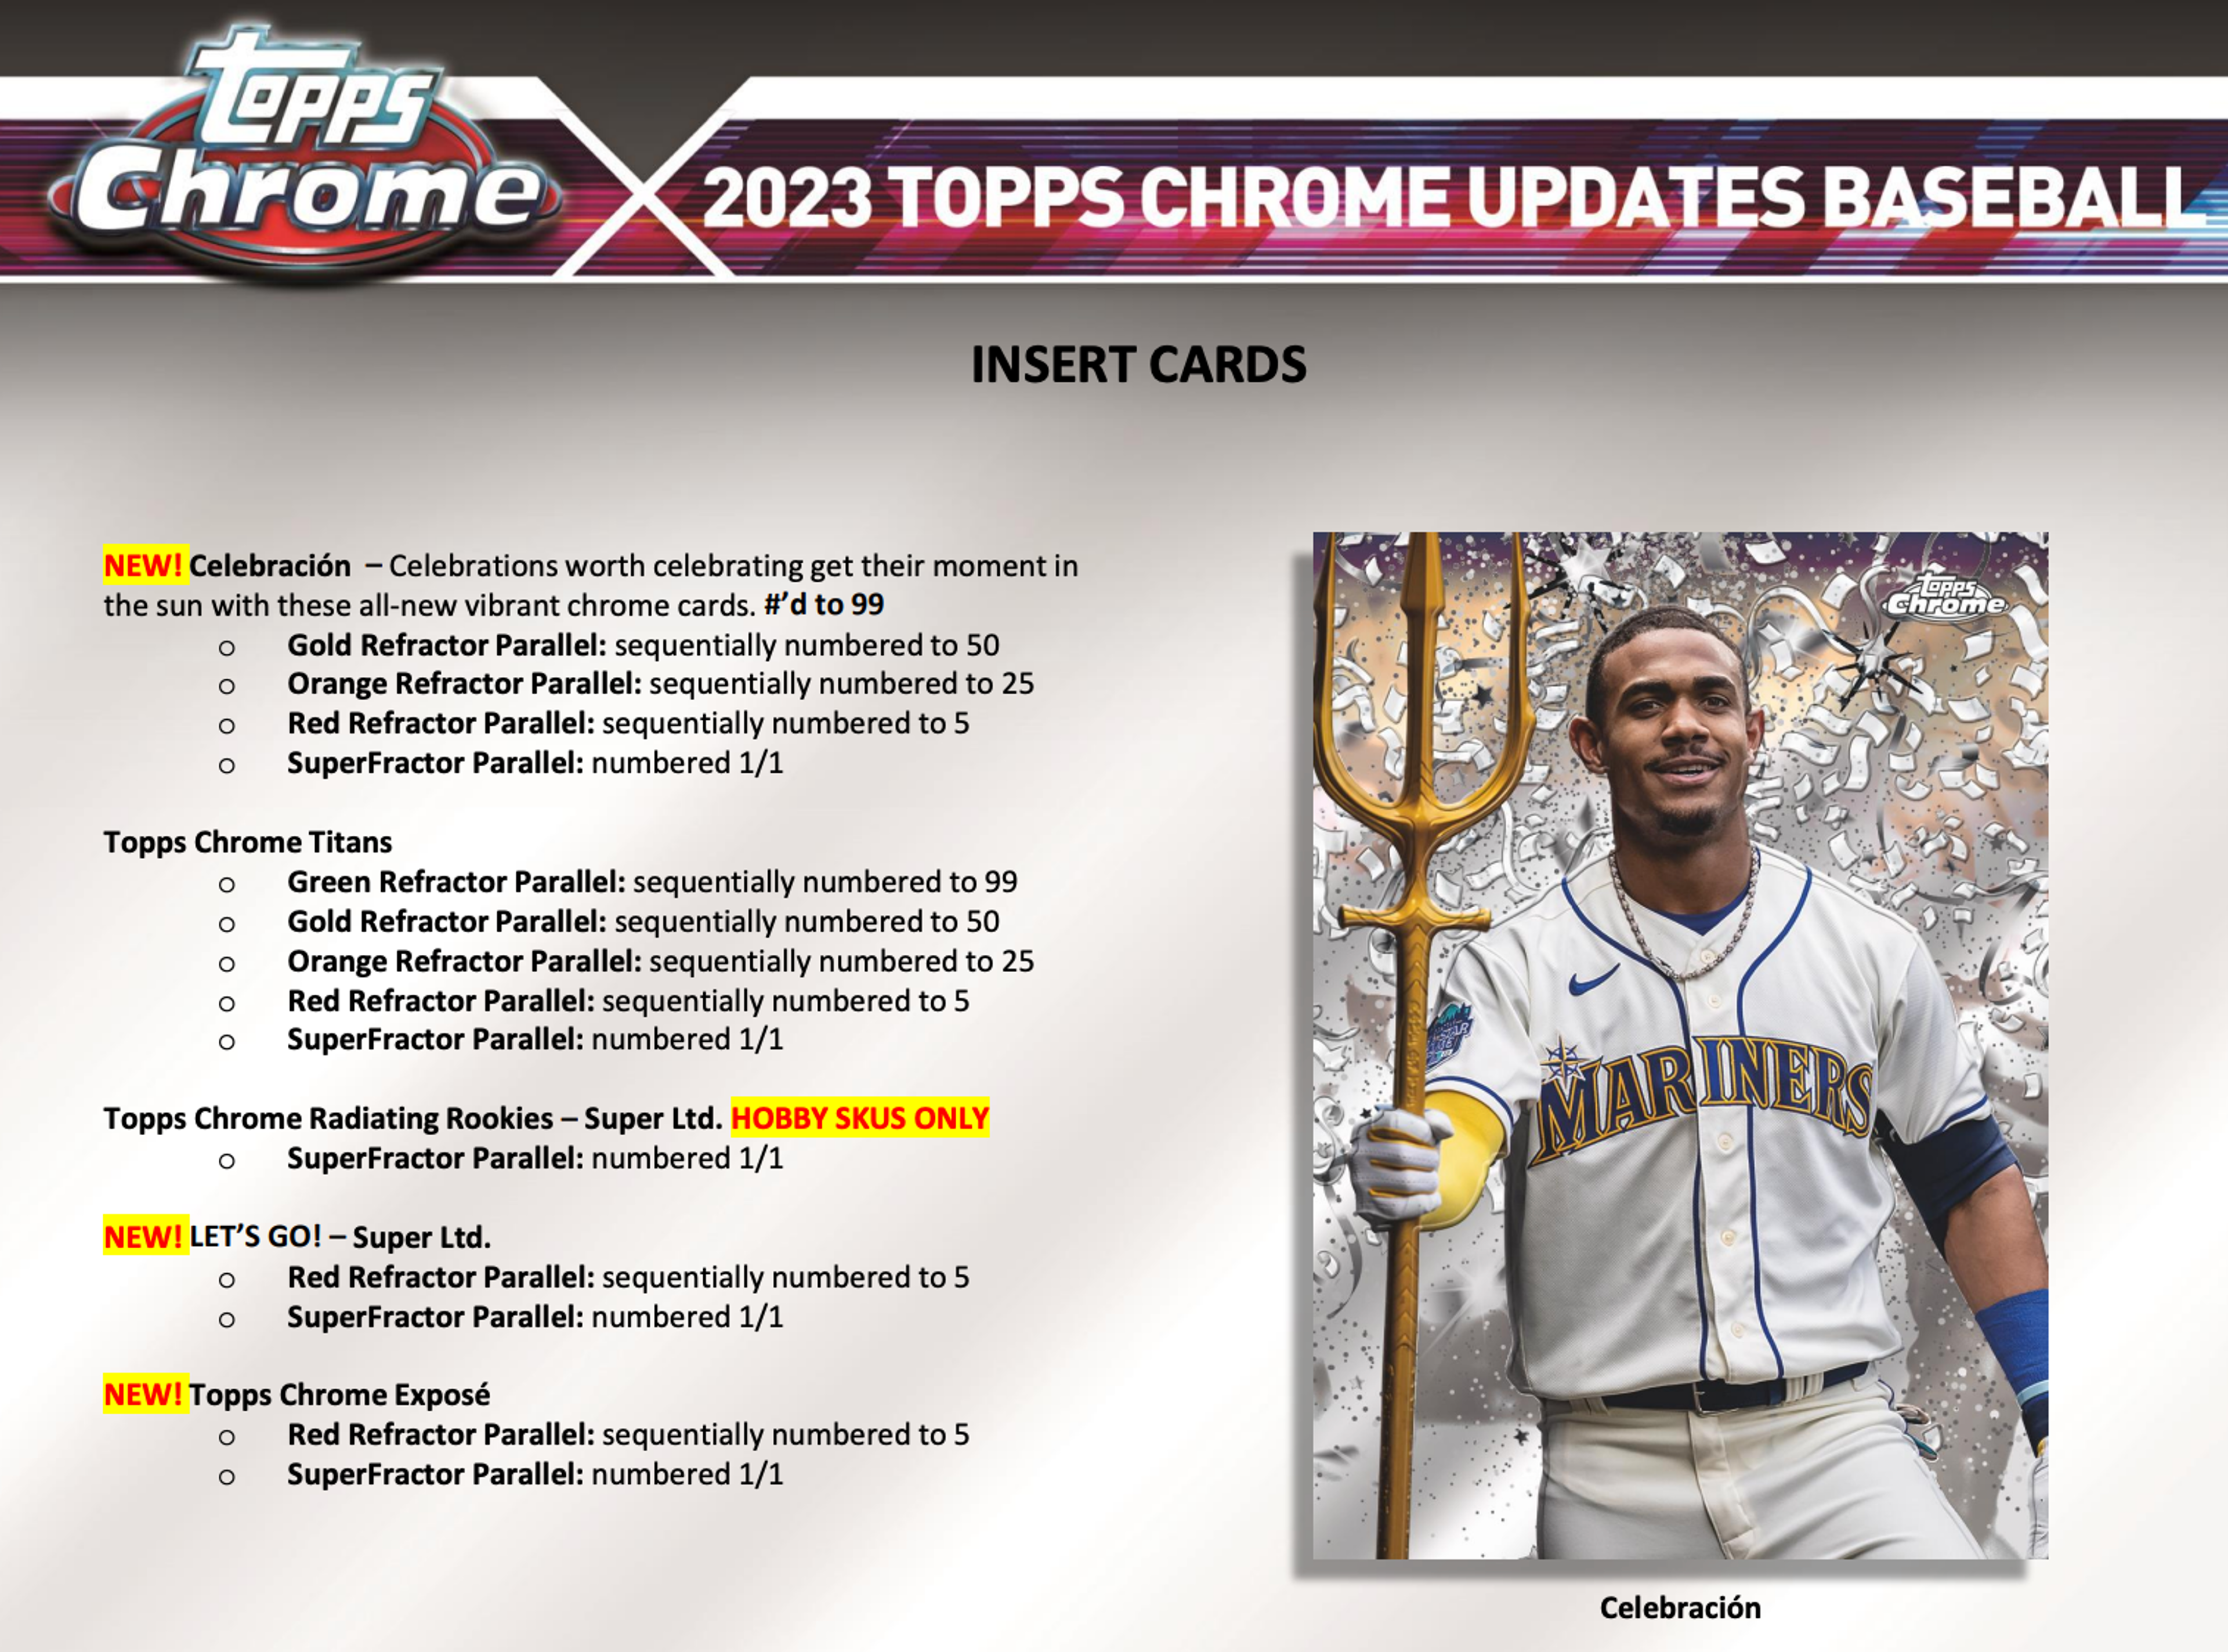 Alternate View 3 of 2023 Topps Chrome Update Series Baseball Breaker's Delight Box